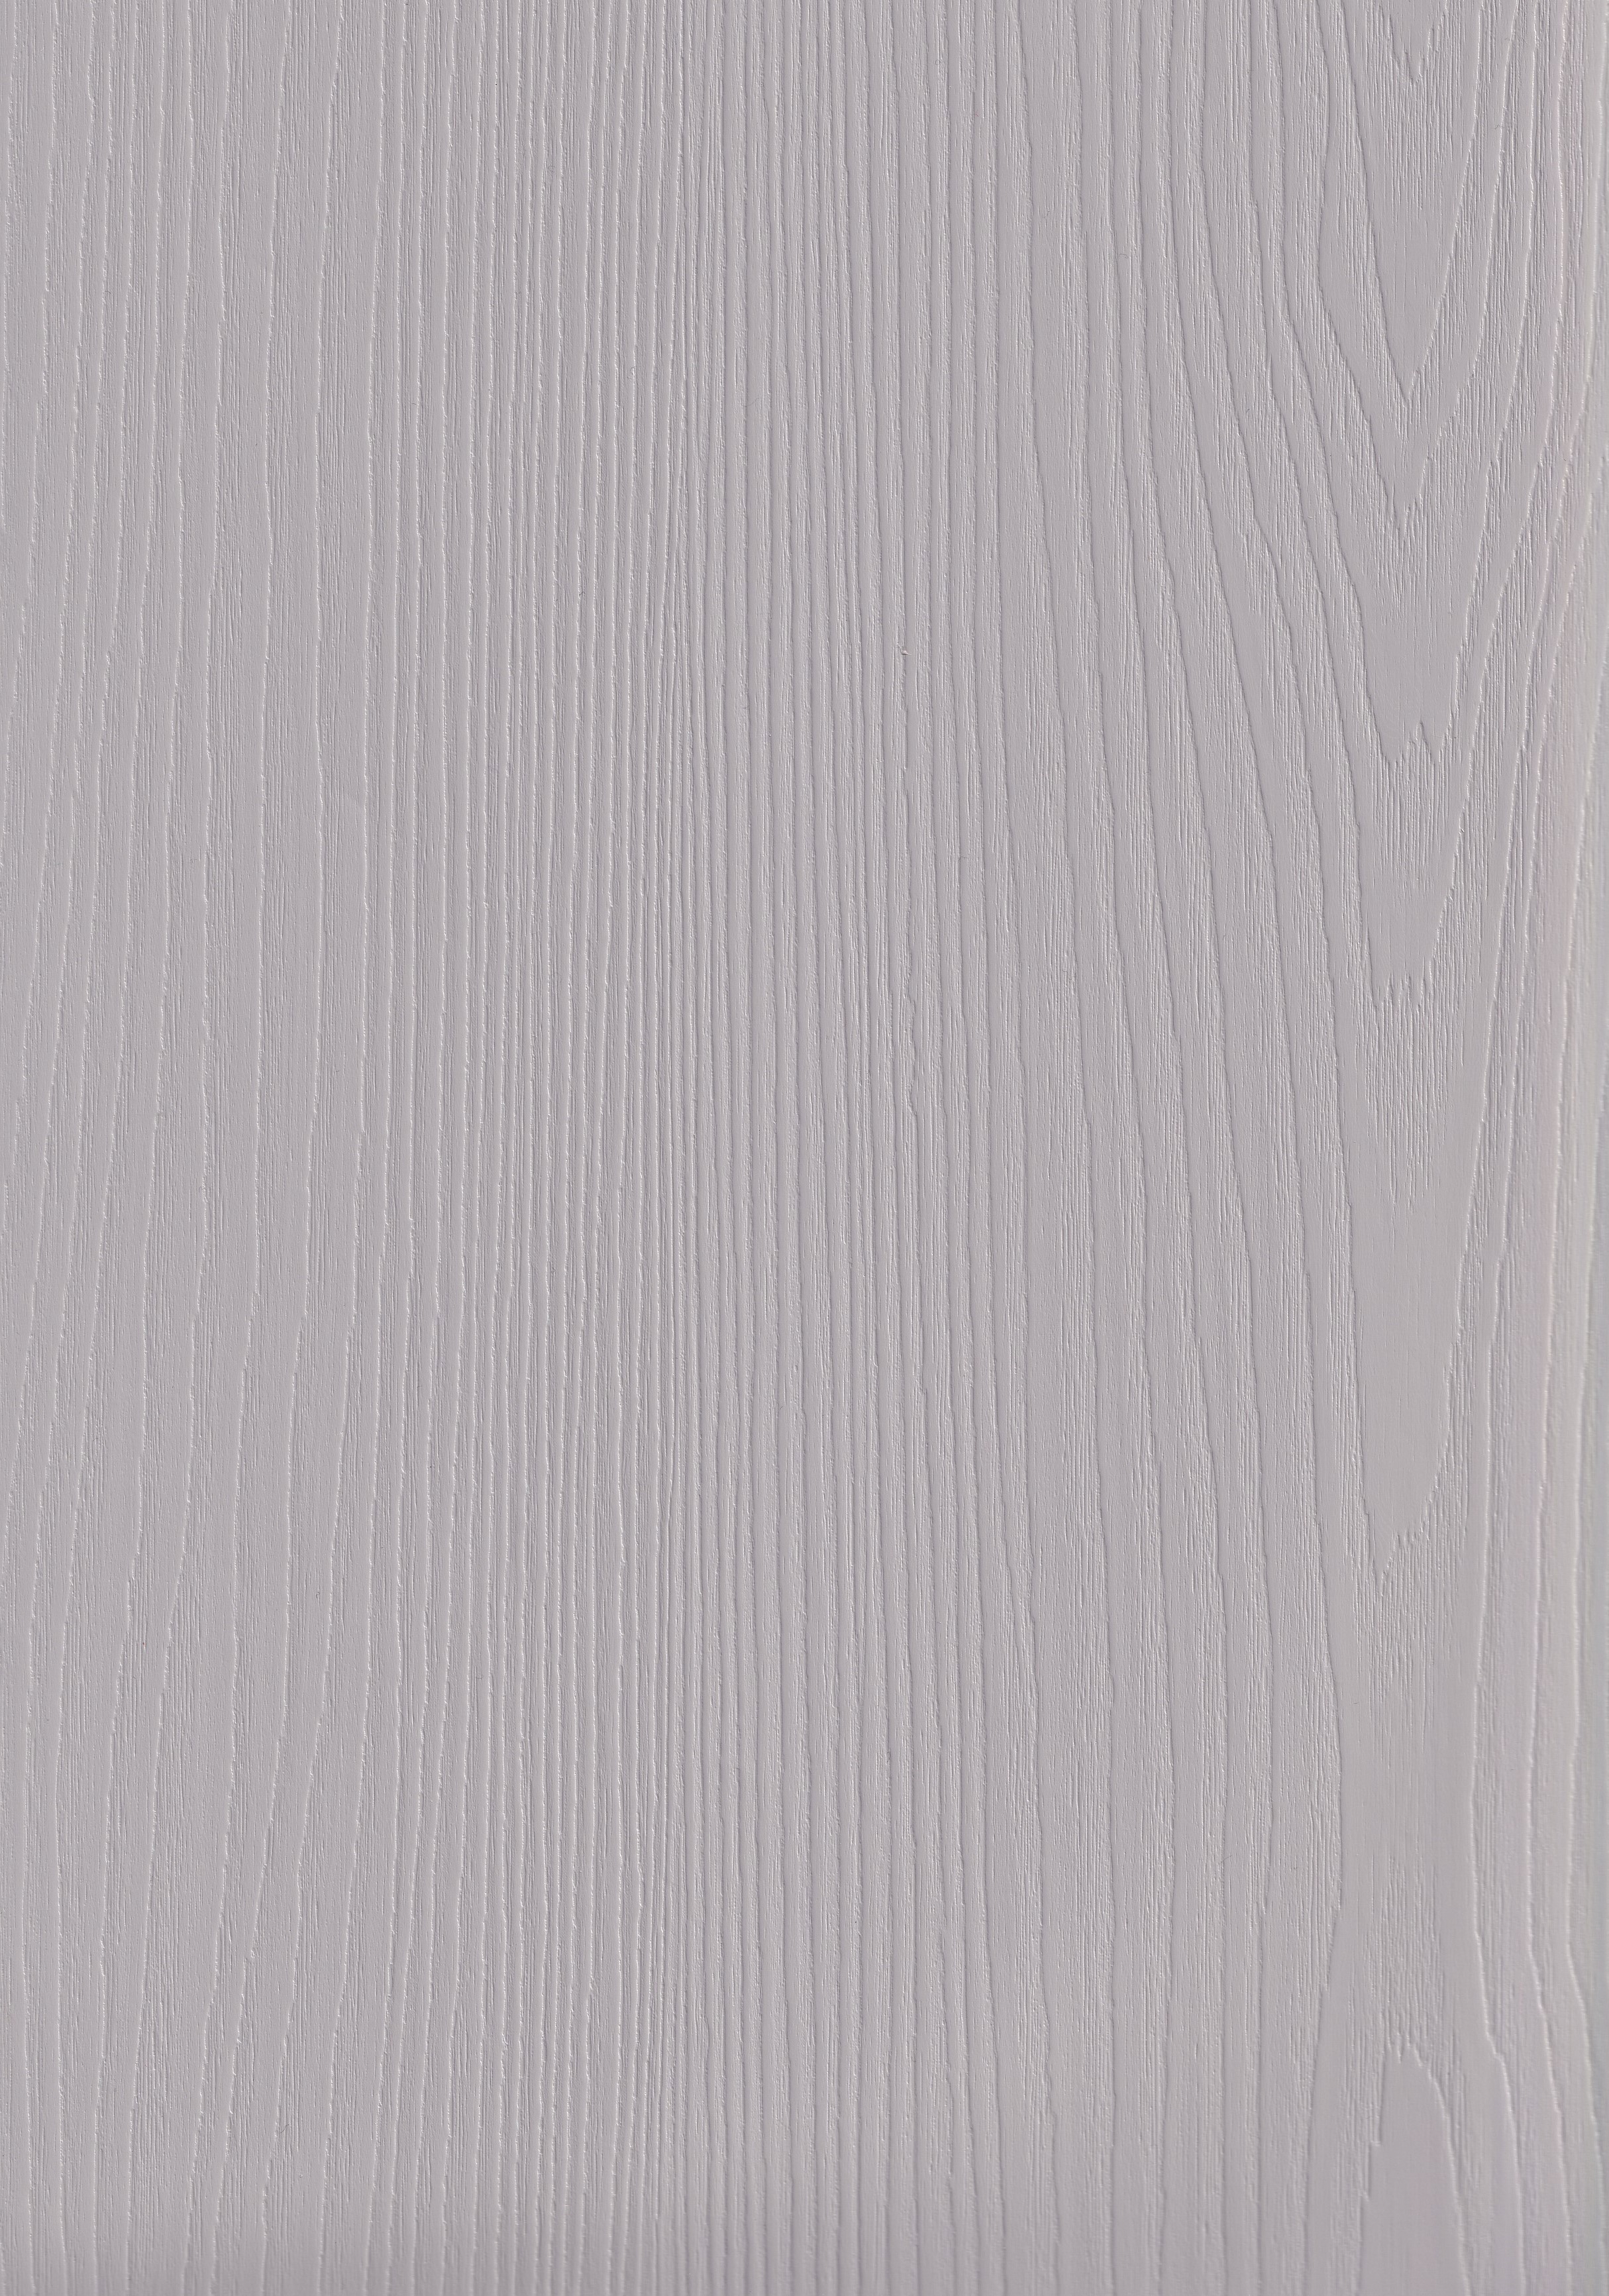 ПВХ пленка ЯРКИЙ СЕРЫЙ ВЕНО европейского качества для мебели и дверей от ЛАМИС | Каталог ПВХ пленок MULTIMA by IMAWELL  | Однотонная ПВХ пленка с древесным тиснением 